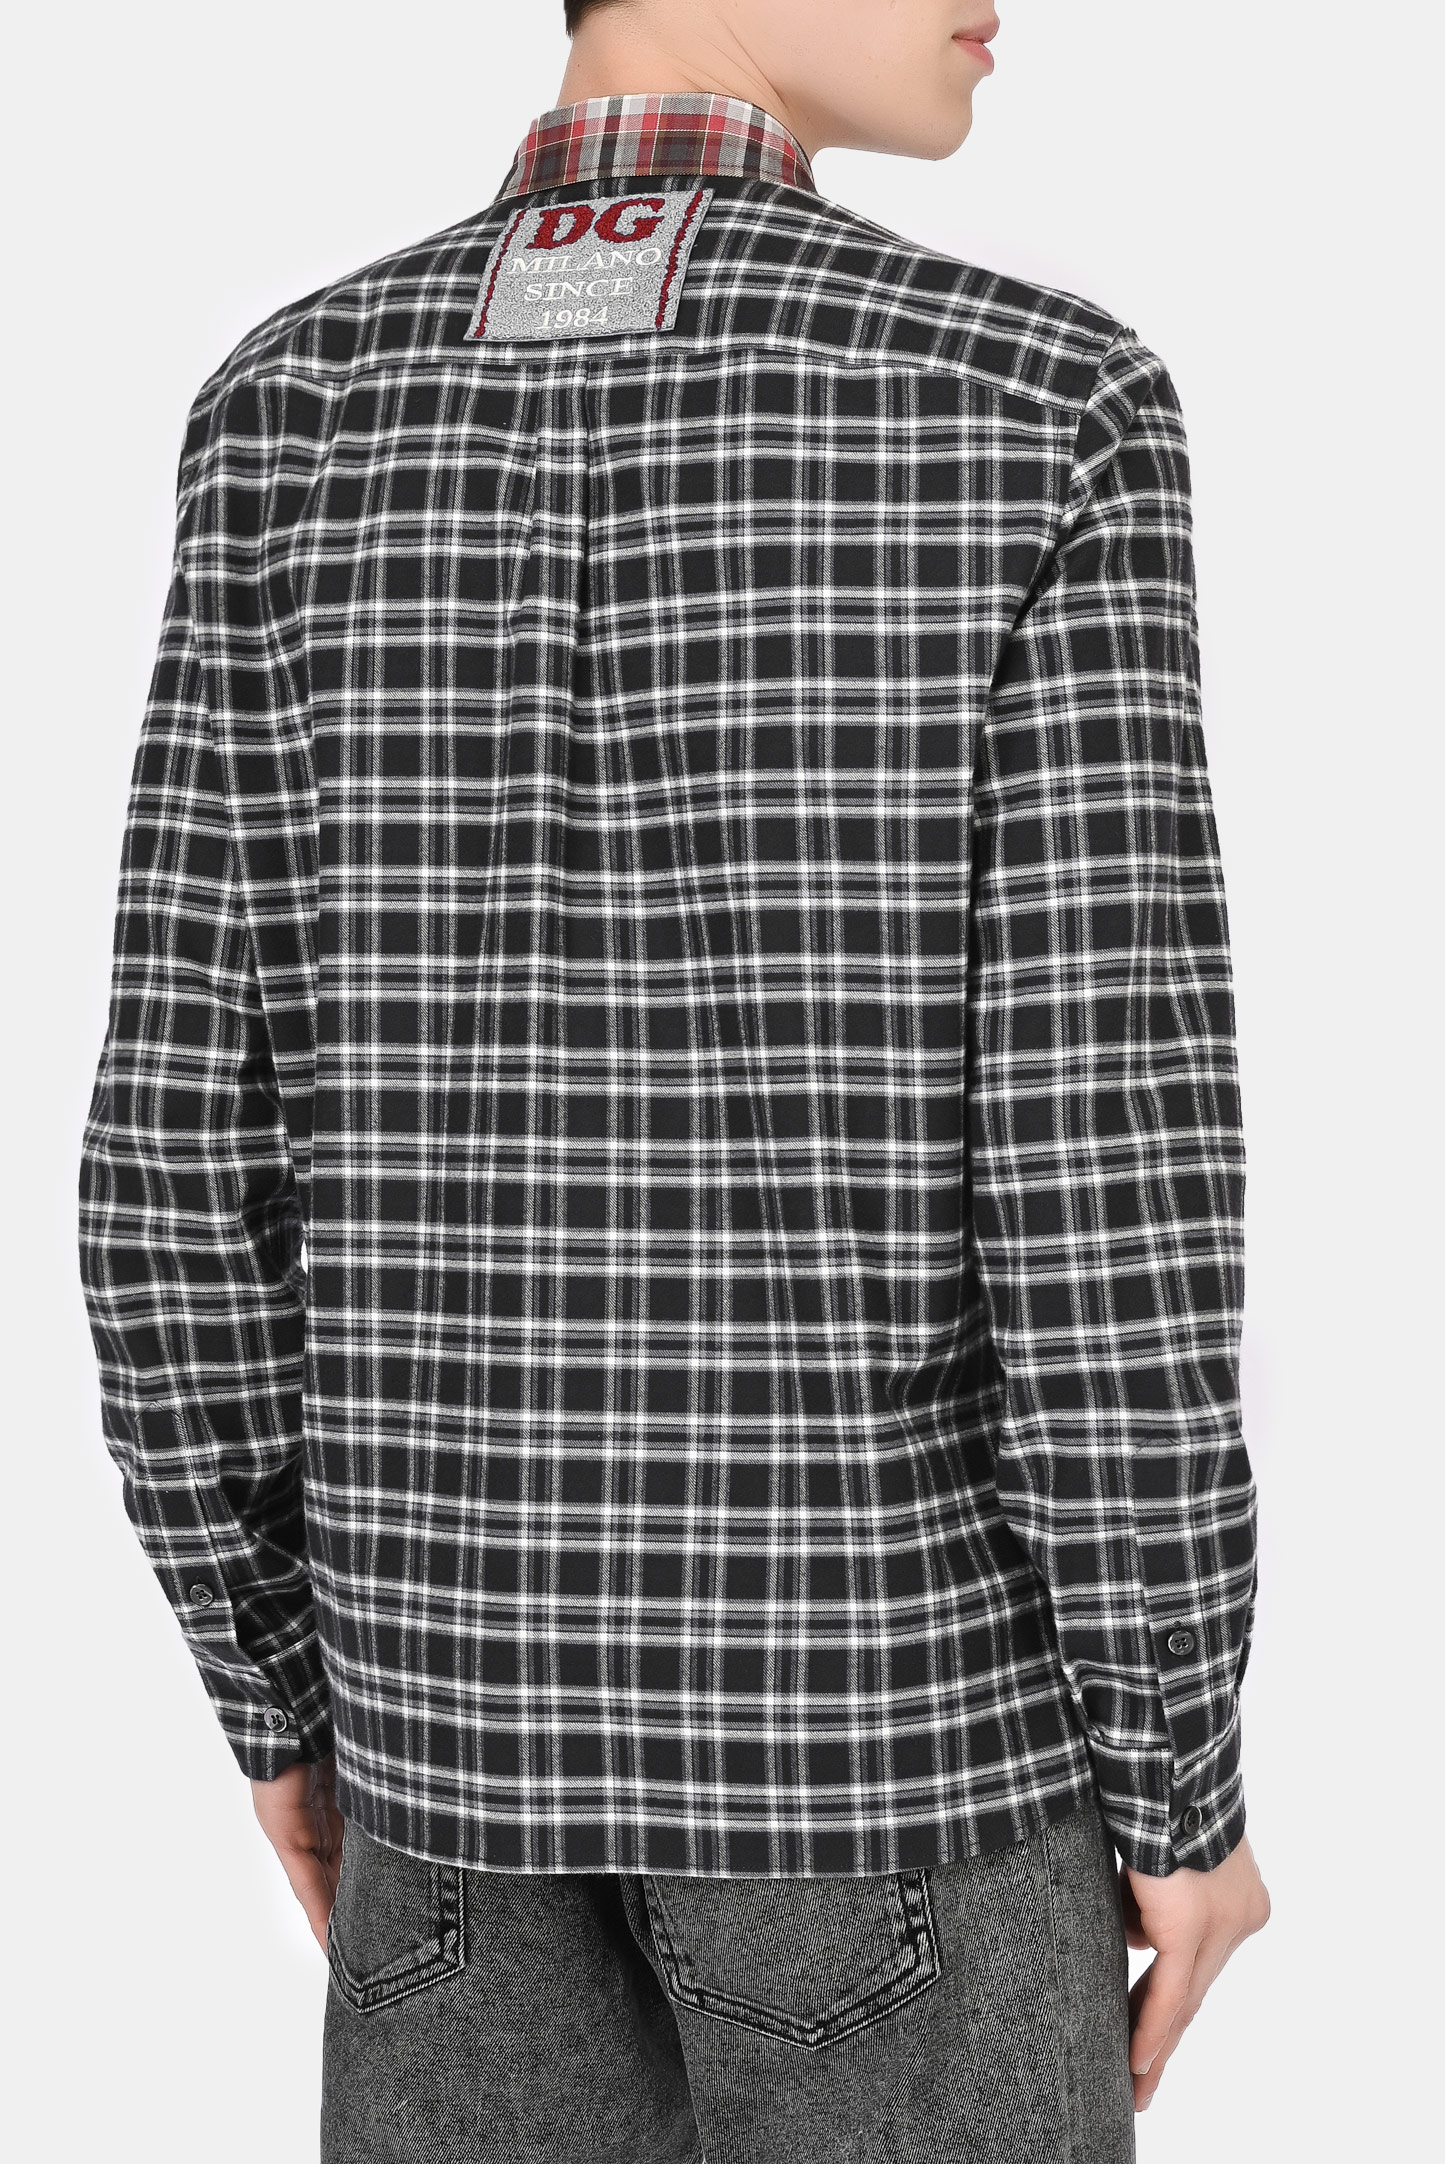 Рубашка DOLCE & GABBANA G5IY3Z FQ5FG, цвет: Черный, Мужской